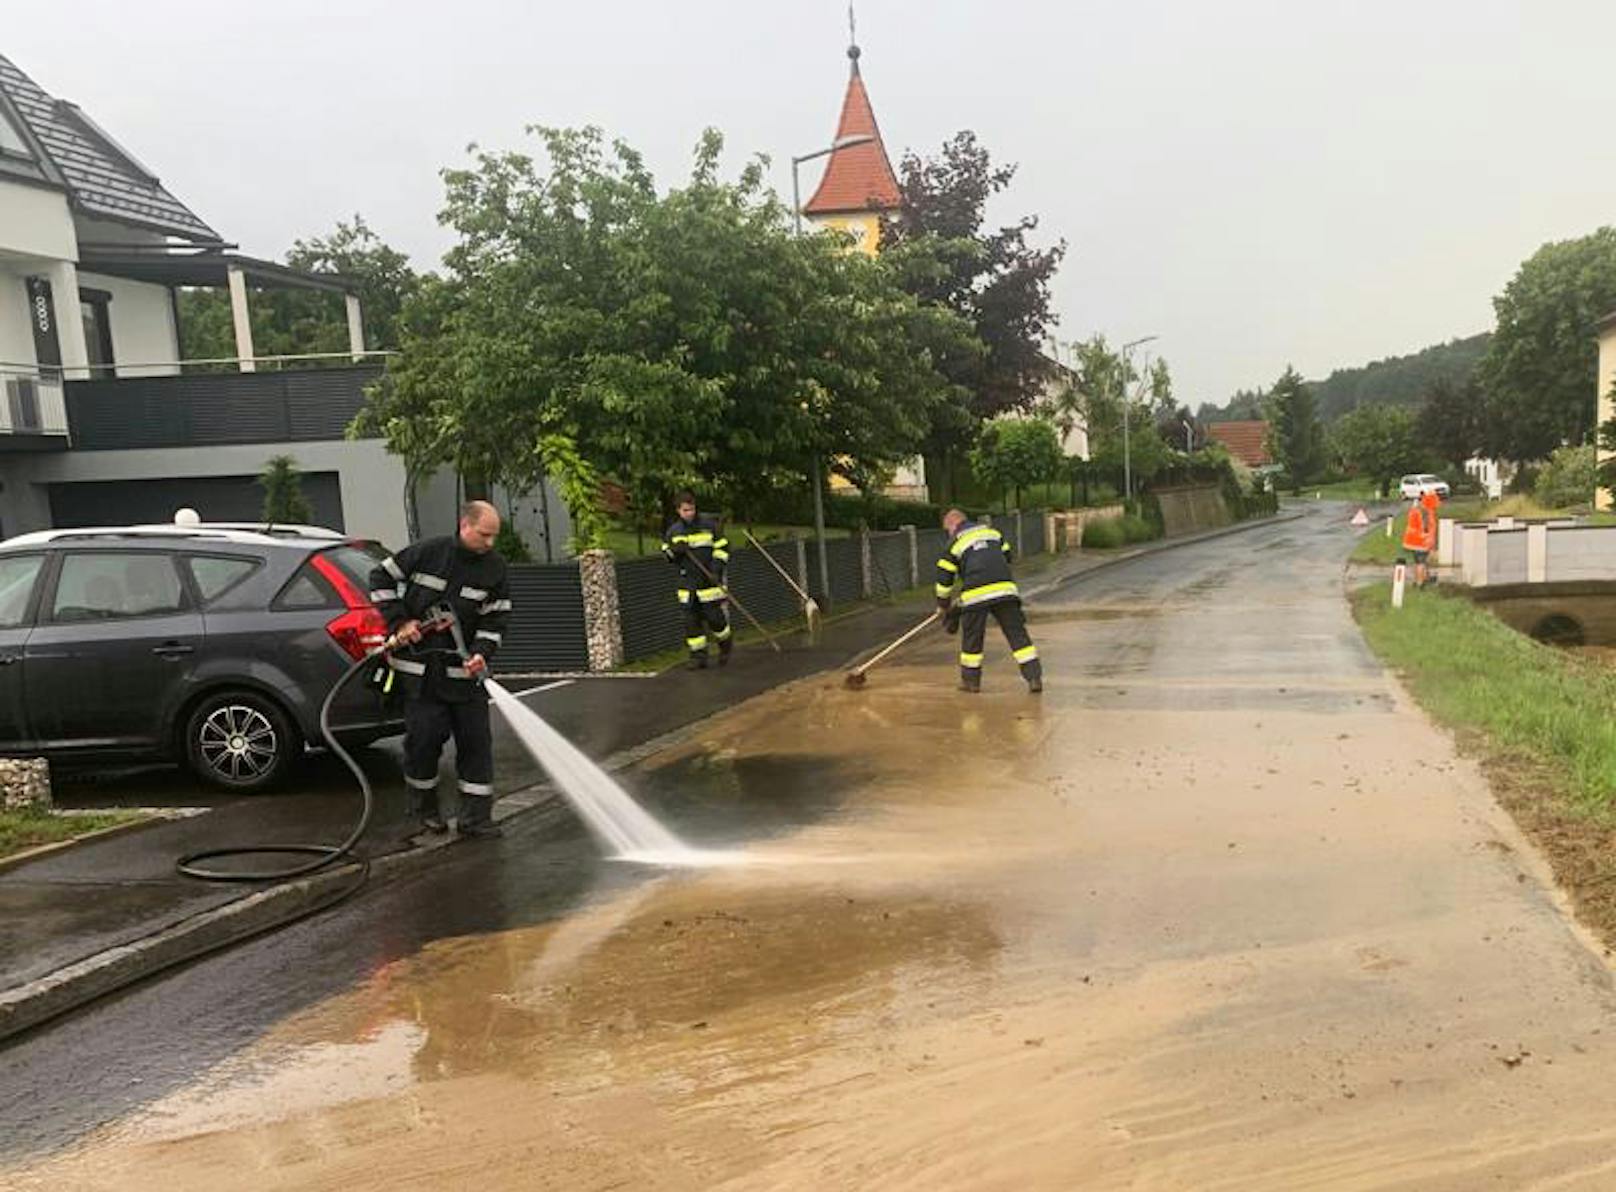 Starker Regen und Gewitter haben am Sonntag die Feuerwehren in der Steiermark auf Trab gehalten. Im Bild: Feuerwehrleute bei Aufräumungsarbeiten nach einem Unwetter in der Gemeinde Gnas am 14. Juni 2020